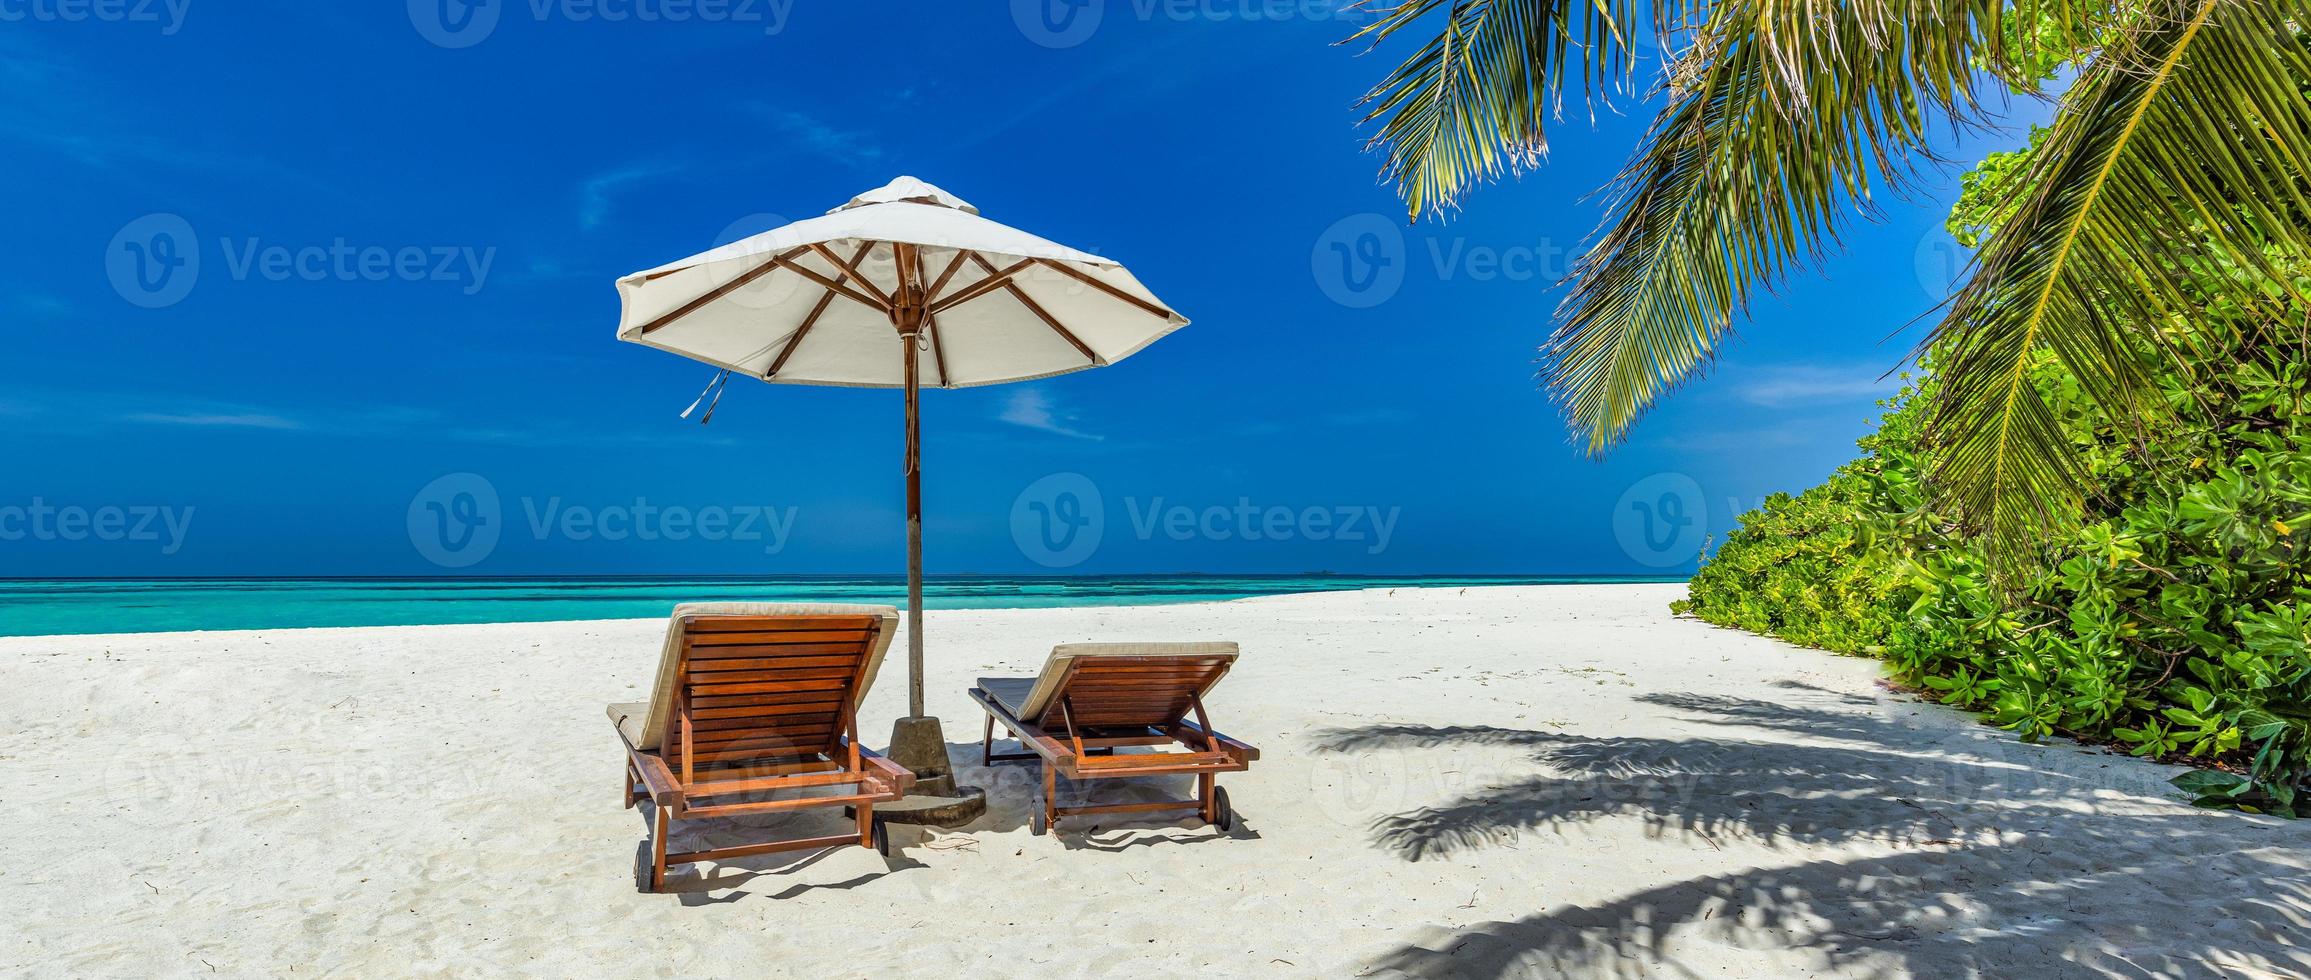 bellissimo tropicale soleggiato costa, coppia sole letti sedie ombrello sotto palma albero le foglie. mare sabbia cielo. romantico rilassare stile di vita panoramico isola spiaggia sfondo. estate viaggio esotico vacanza panorama foto